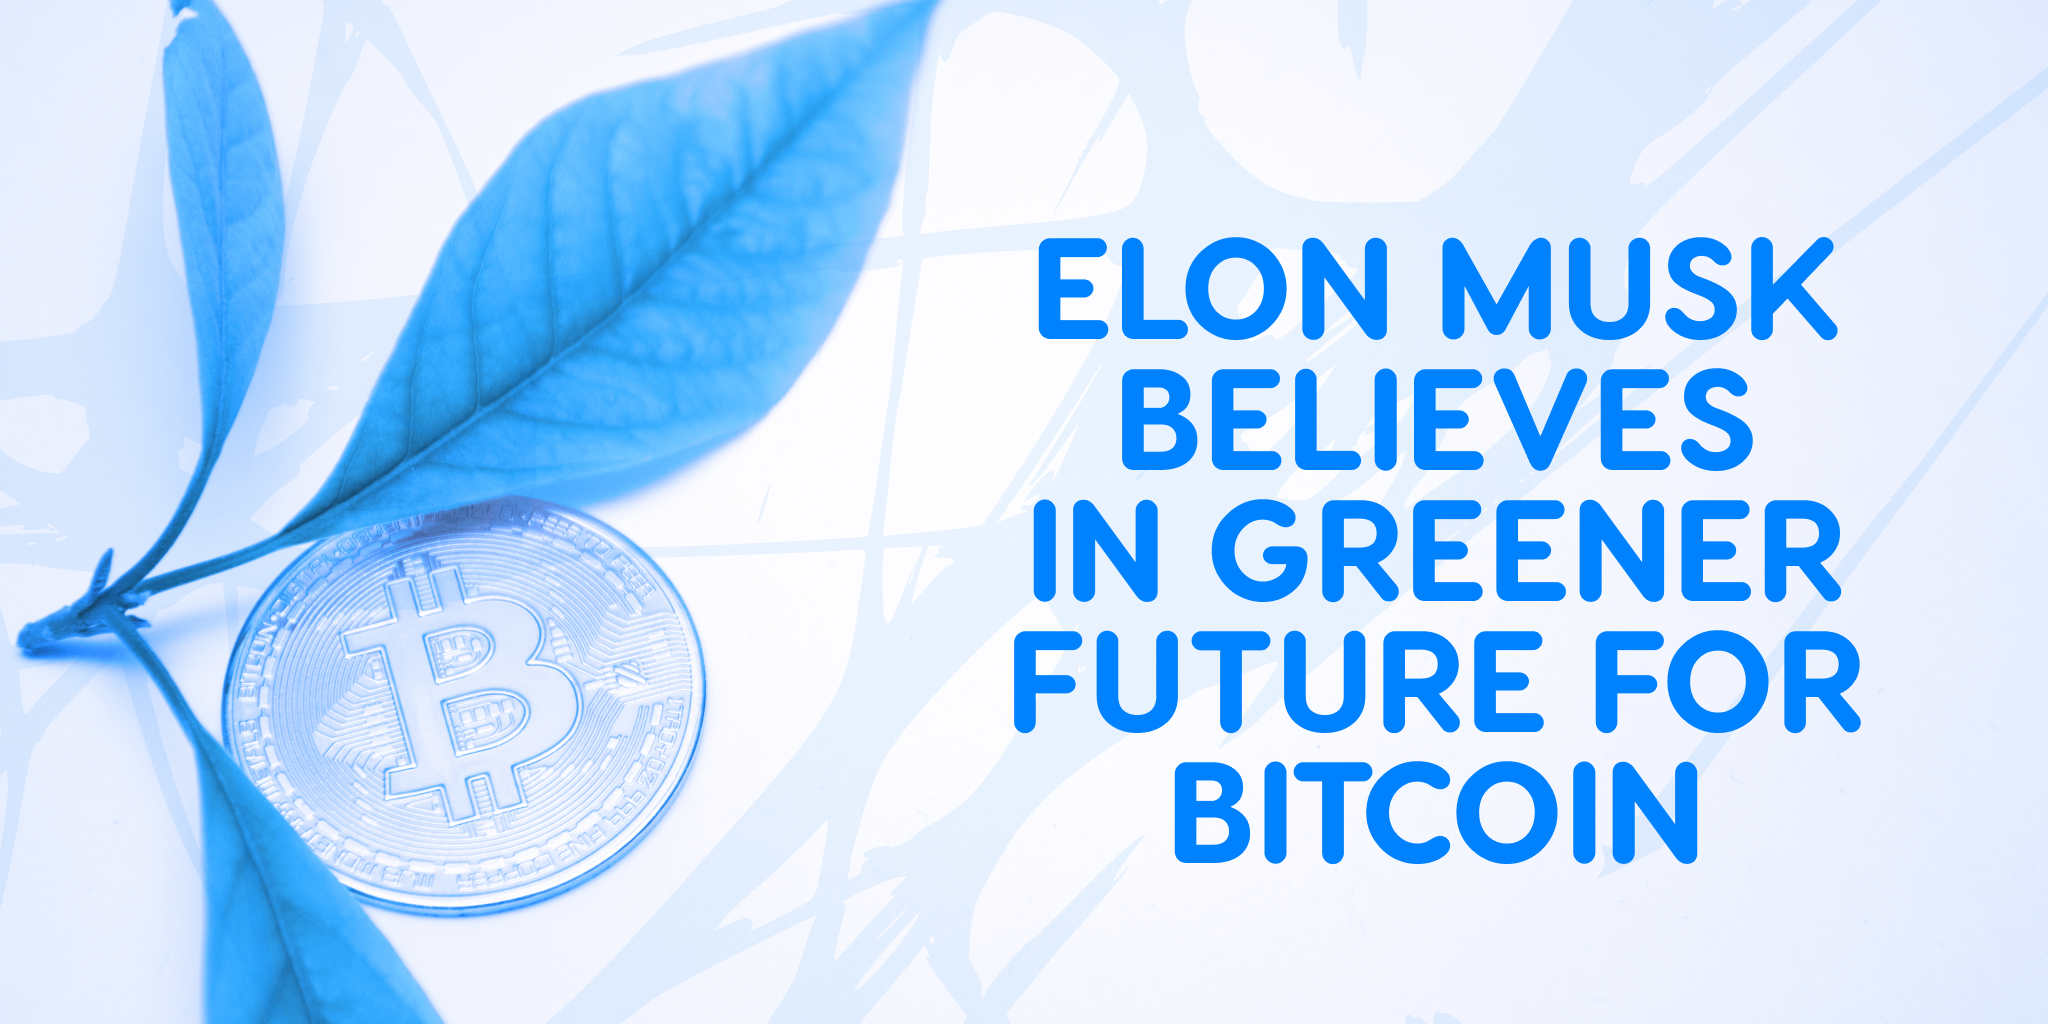 Elon Musk gelooft in groenere toekomst voor Bitcoin